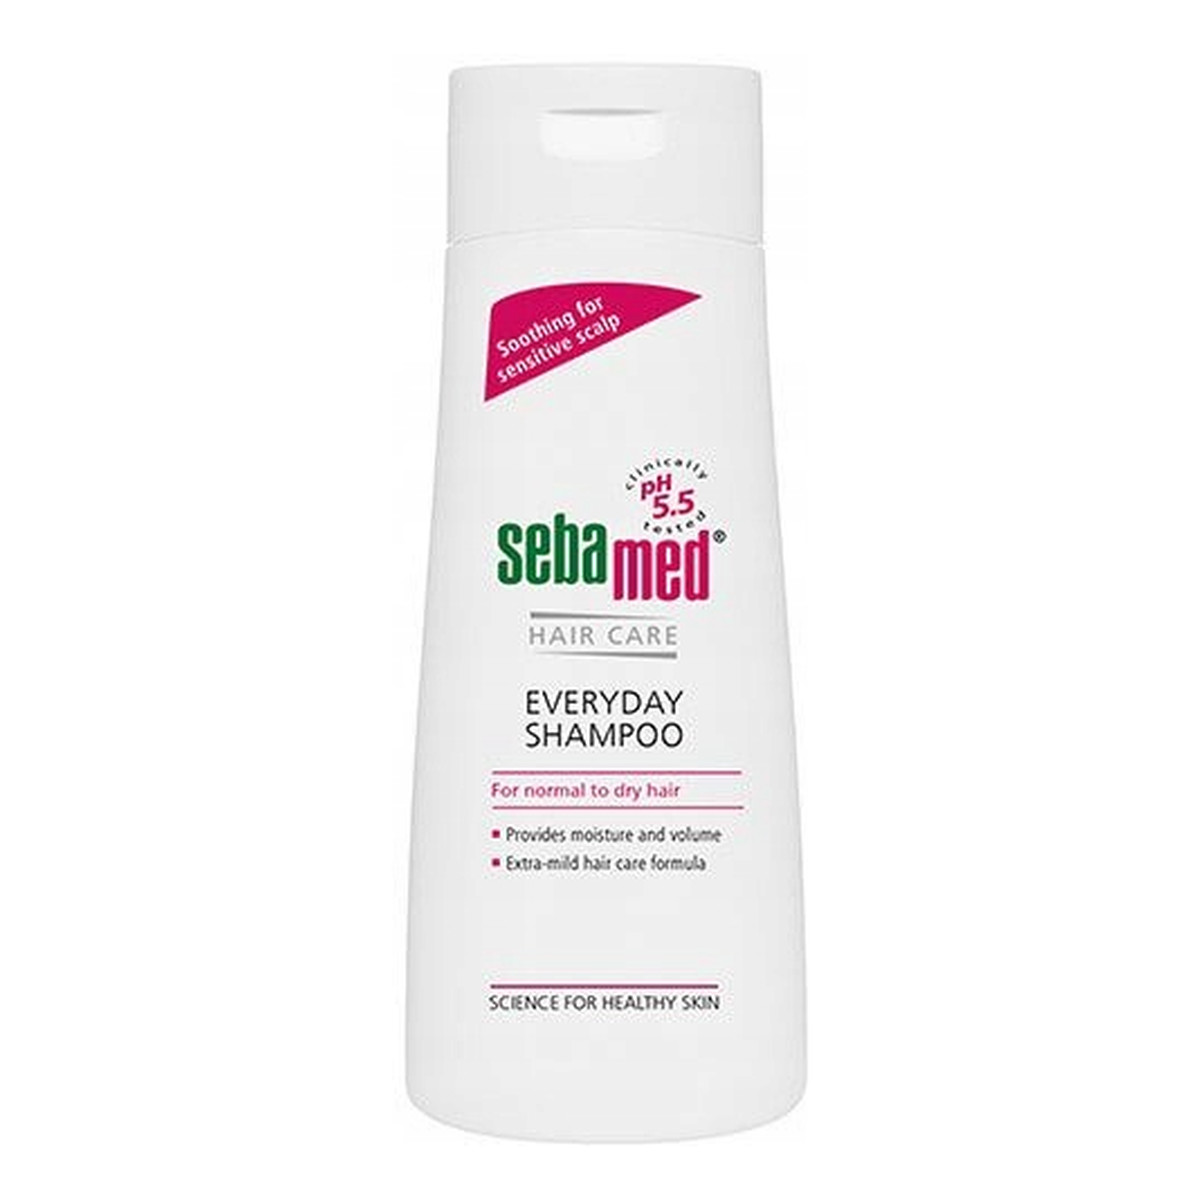 Sebamed Hair Care delikatny szampon do włosów 20ml